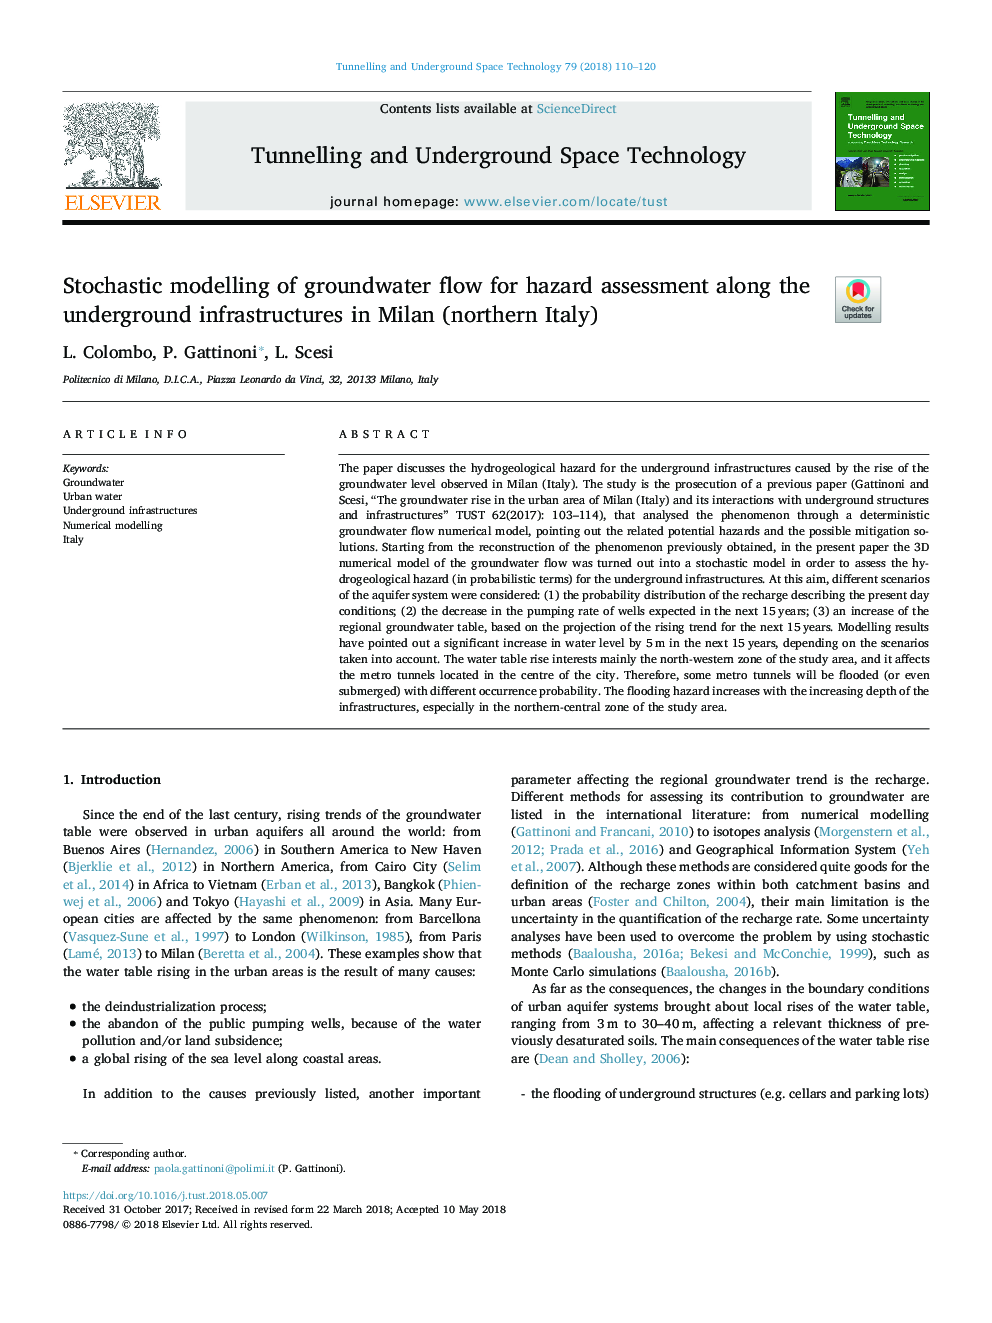 مدل سازی تصادفی جریان آب زیرزمینی برای ارزیابی خطر در امتداد زیرساخت های زیرزمینی در میلان (شمال ایتالیا) 